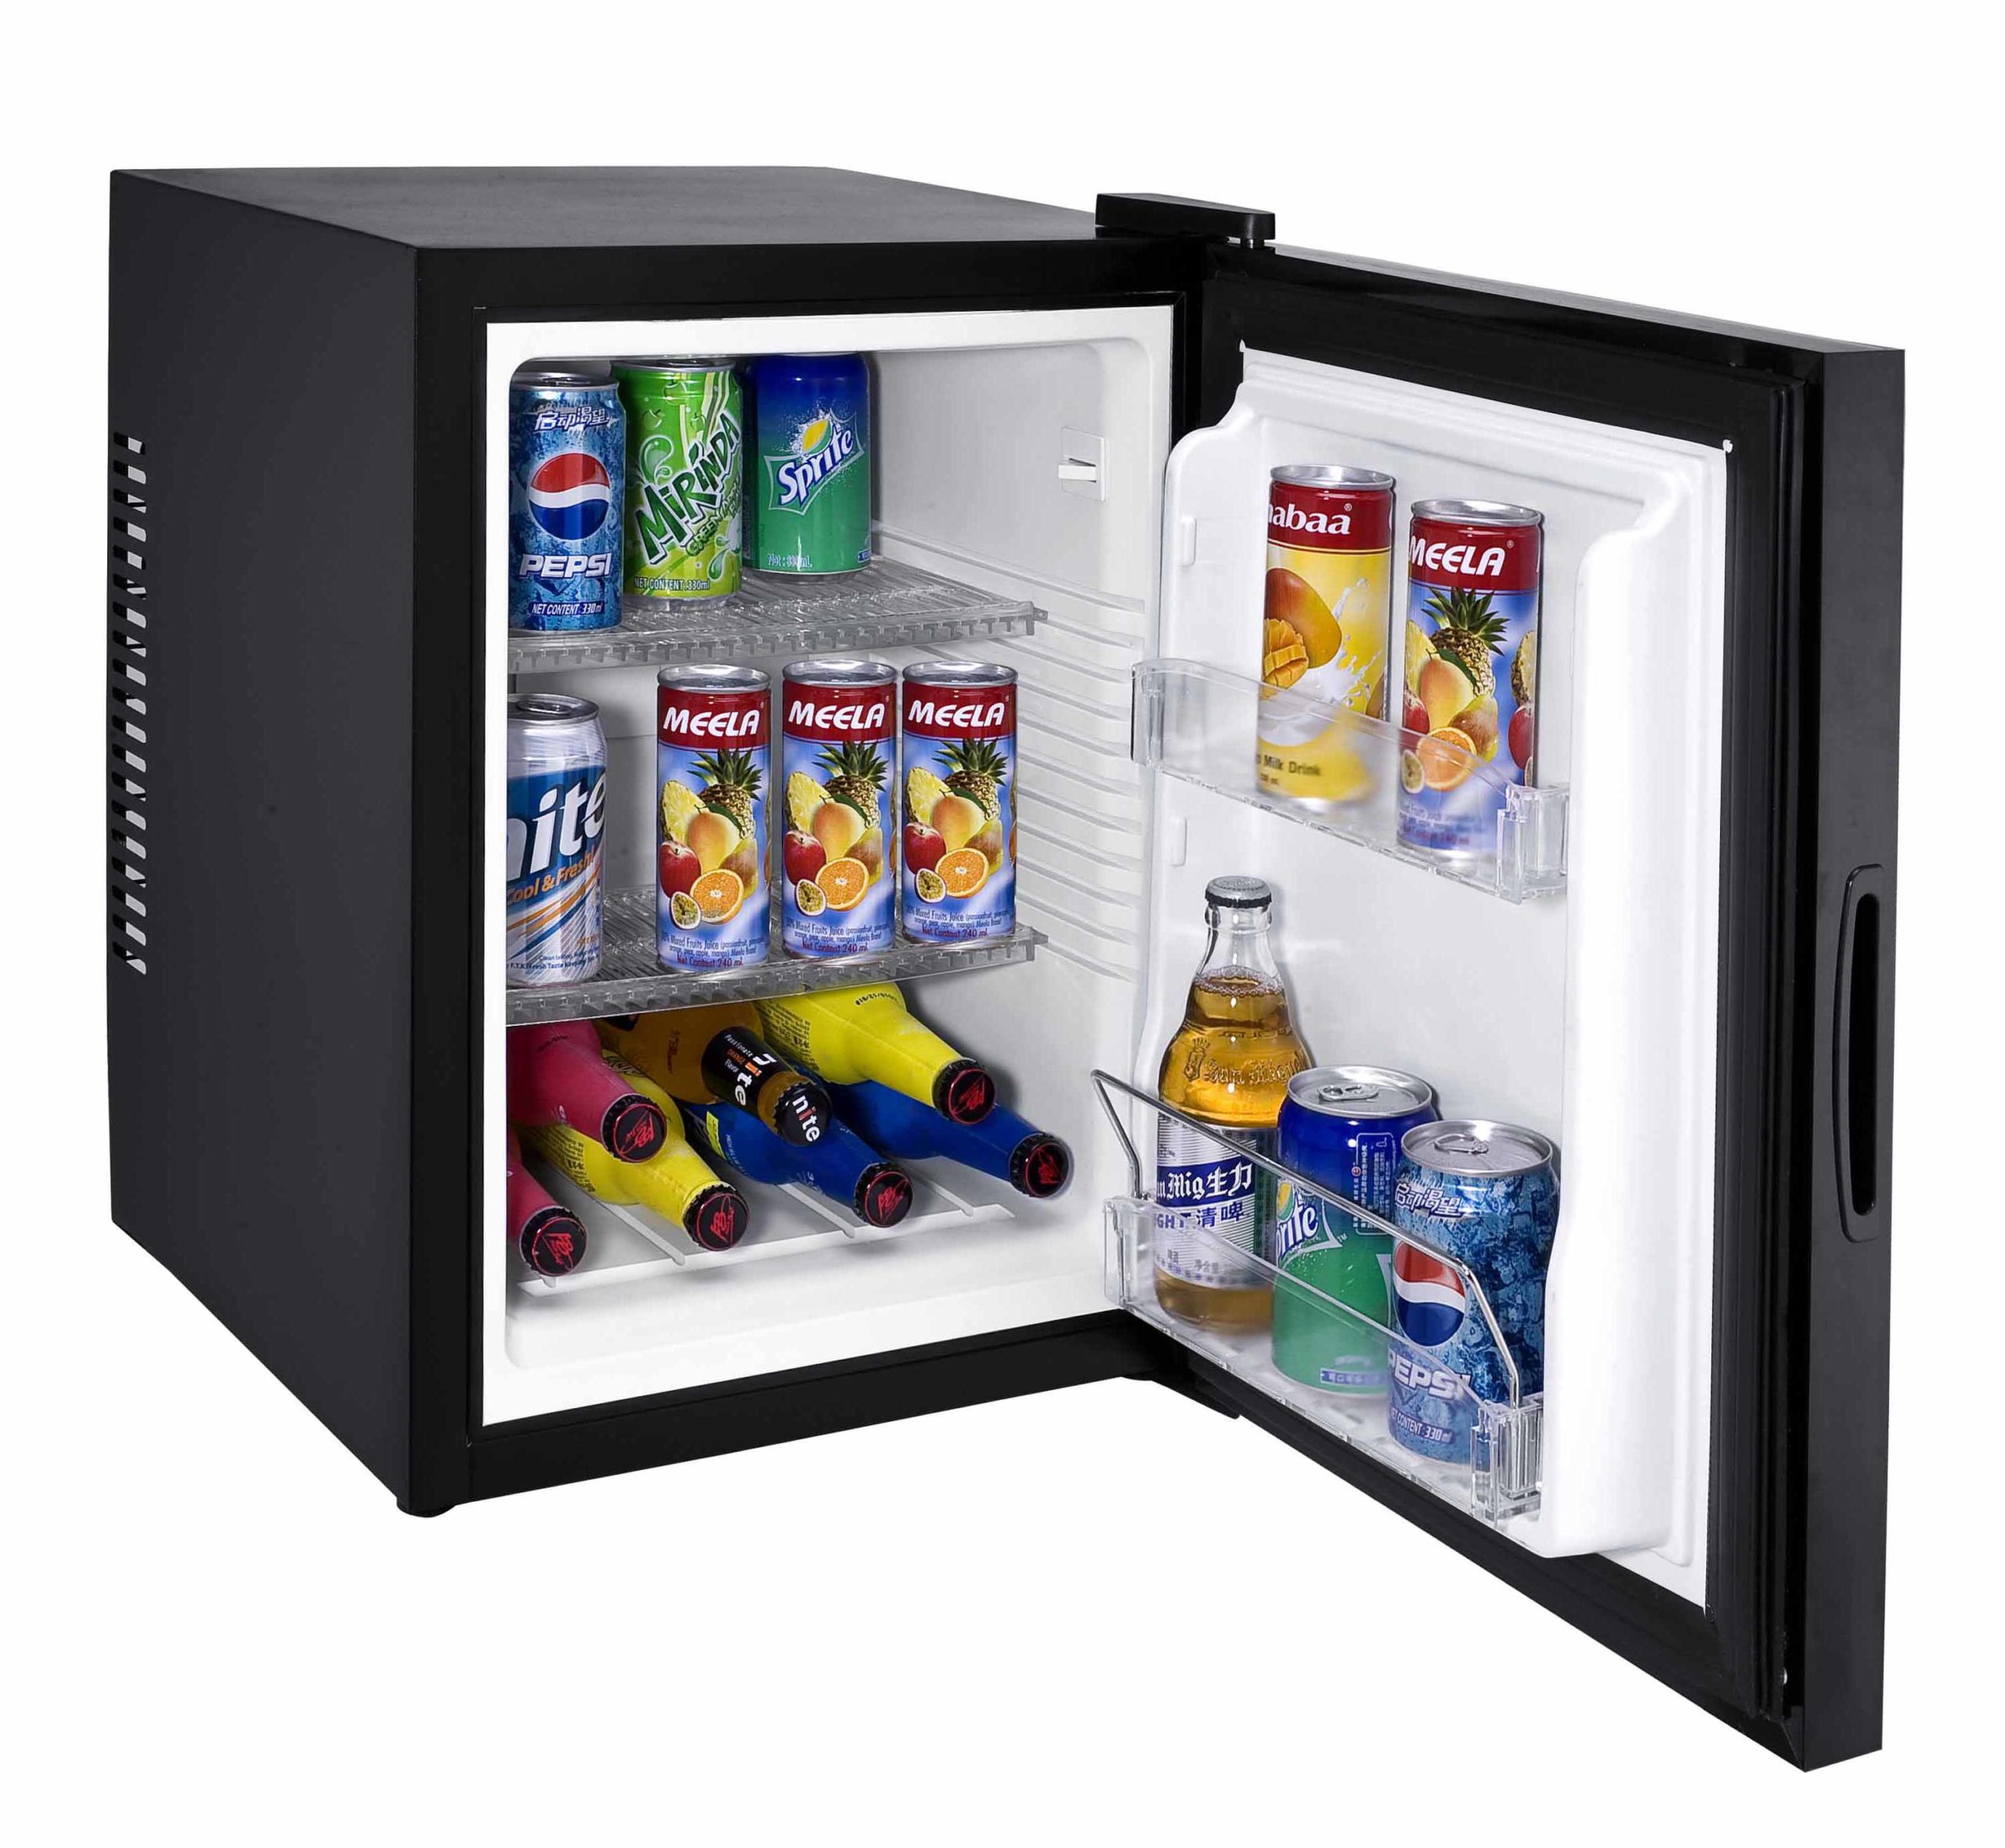 Купить холодильник в алматы. Мини холодильник Mini Fridge. Холодильник мини бар 18l Mini Fridge. Мини холодильник 18l Mini Fridge (model:KT-x18). Мини-холодильник HT-17a +.